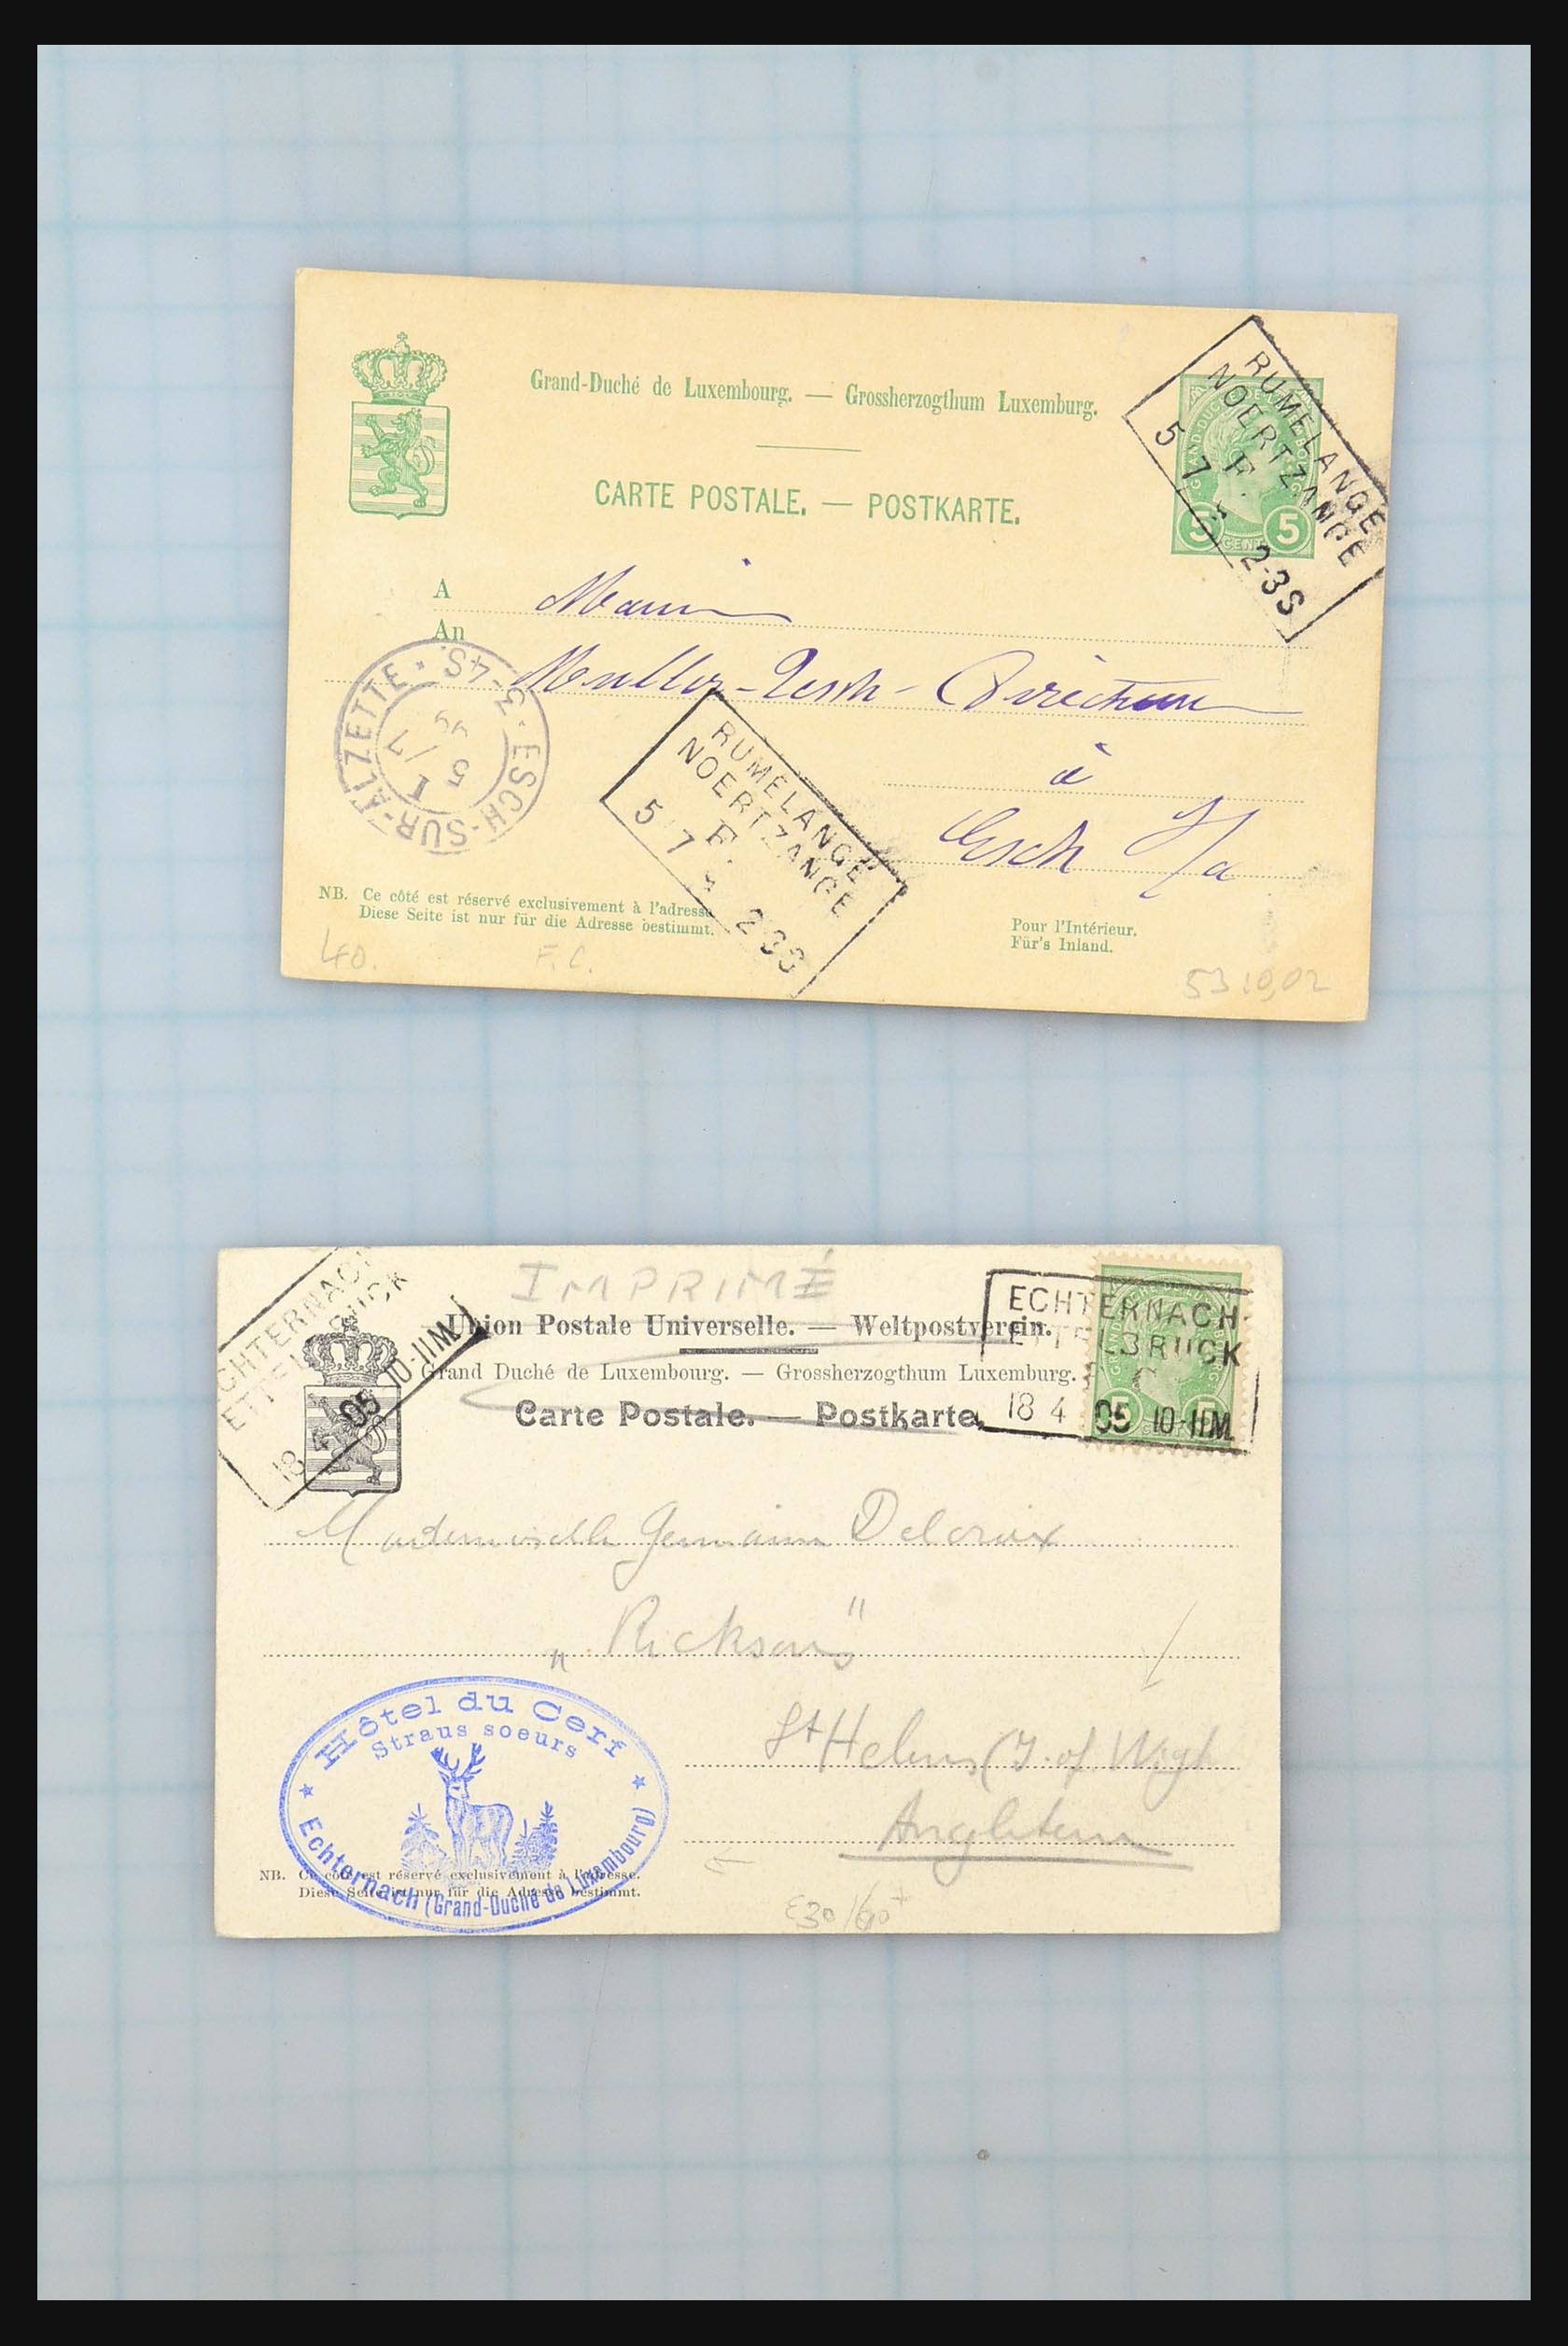 31358 084 - 31358 Portugal/Luxemburg/Griekenland brieven 1880-1960.